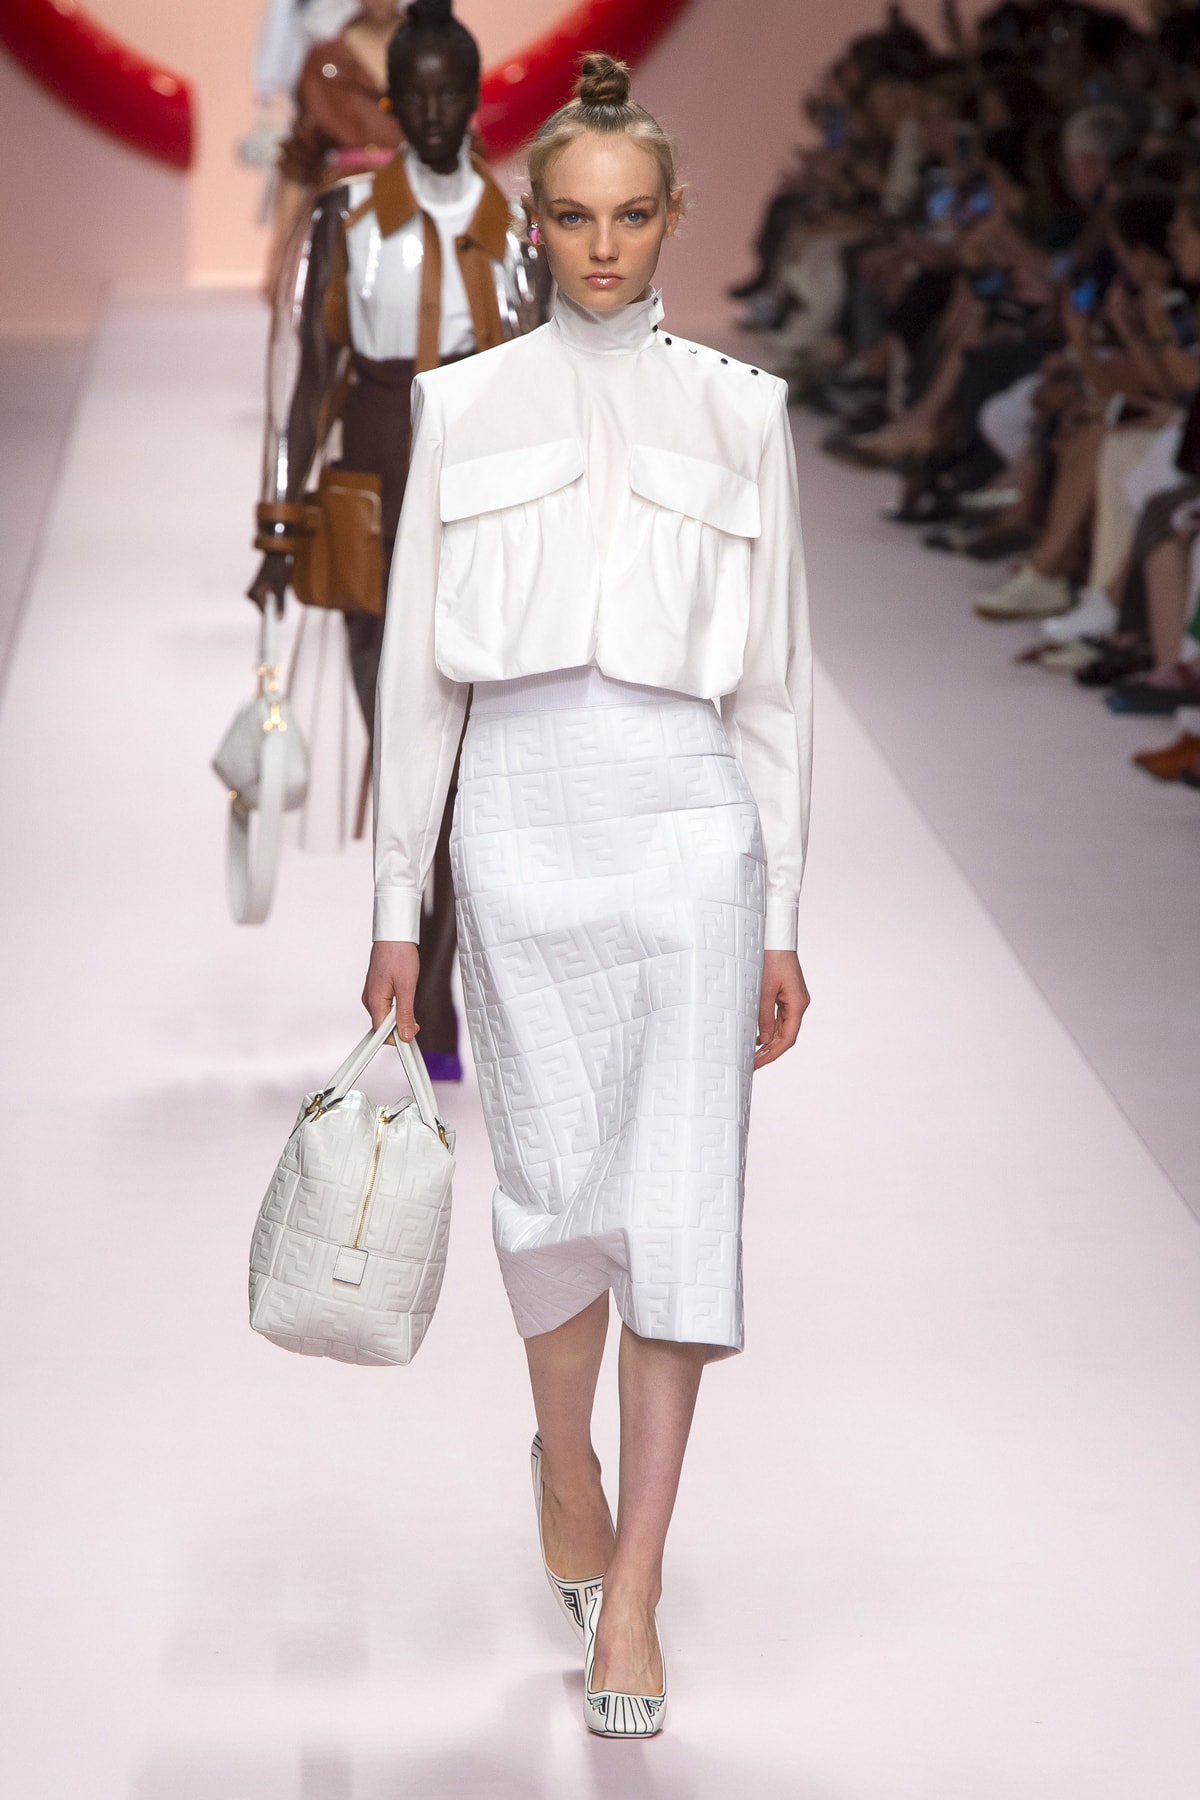 Fendi Karl Lagerfeld Spring Summer 2019 Milan Fashion Week Show Collection Jacket Skirt Handbag White